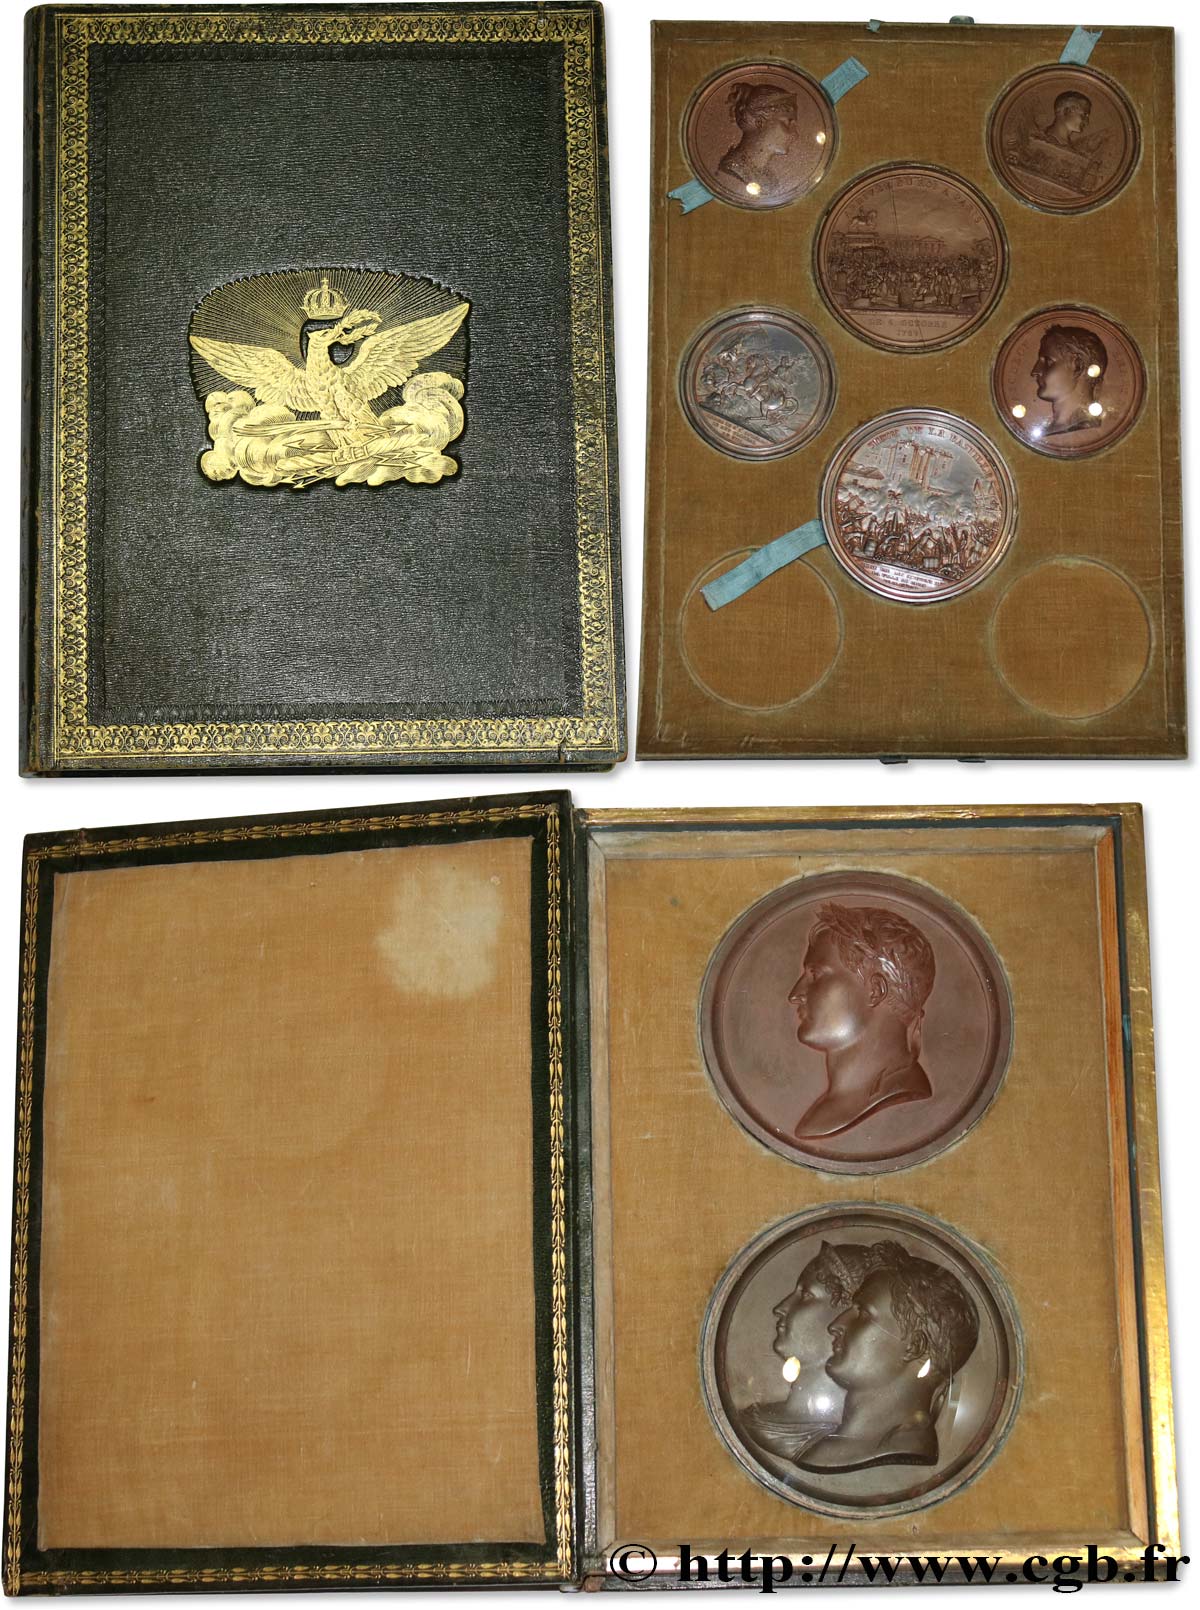 PREMIER EMPIRE / FIRST FRENCH EMPIRE Coffret Révolution et Napoléon Ier contenant des tirages en étain bronzé AU